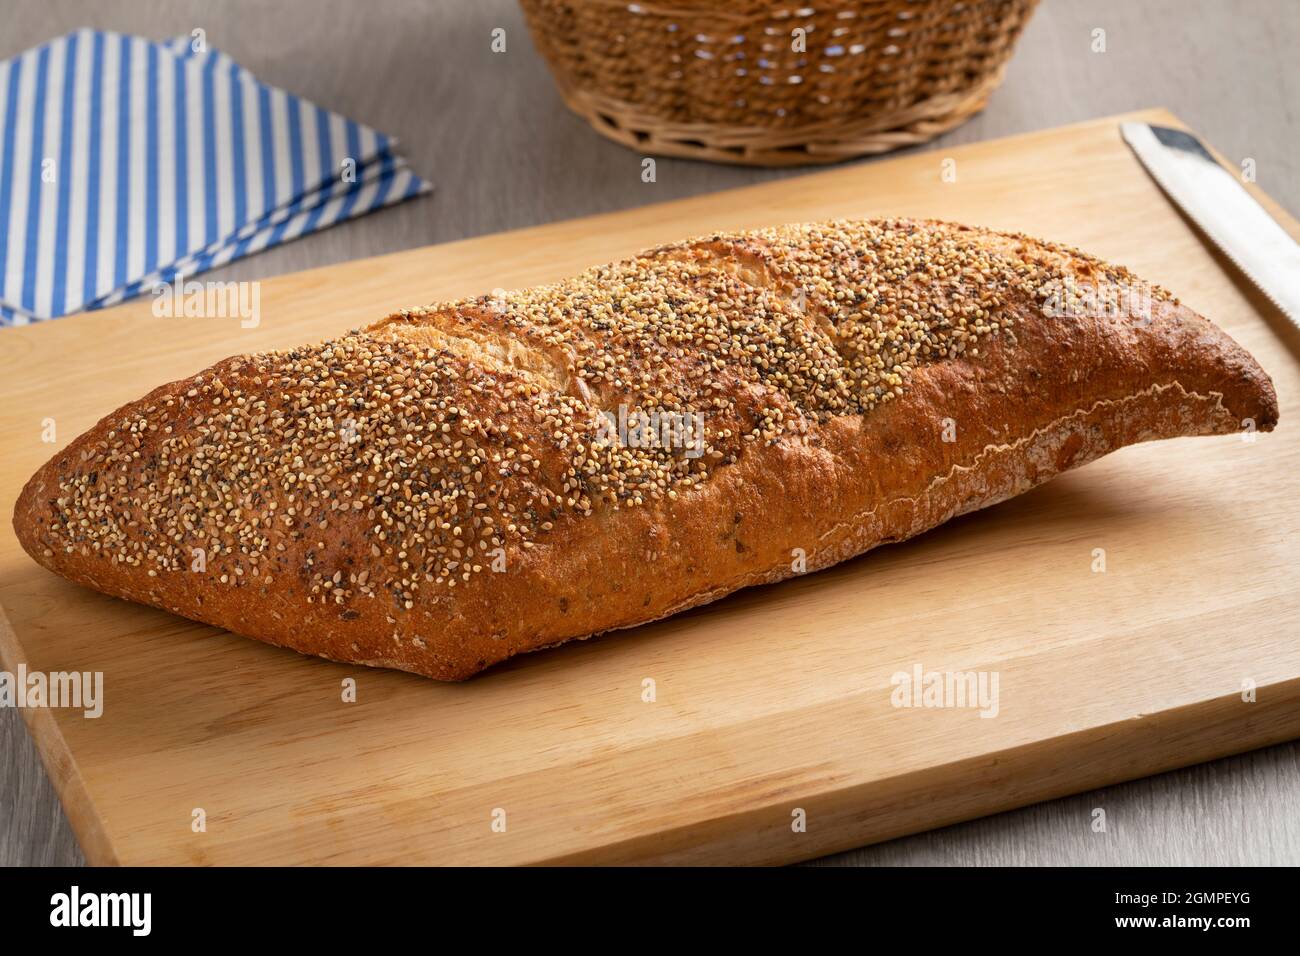 Pane integrale tradizionale di pasta madre in una forma speciale con semi su un tagliere Foto Stock